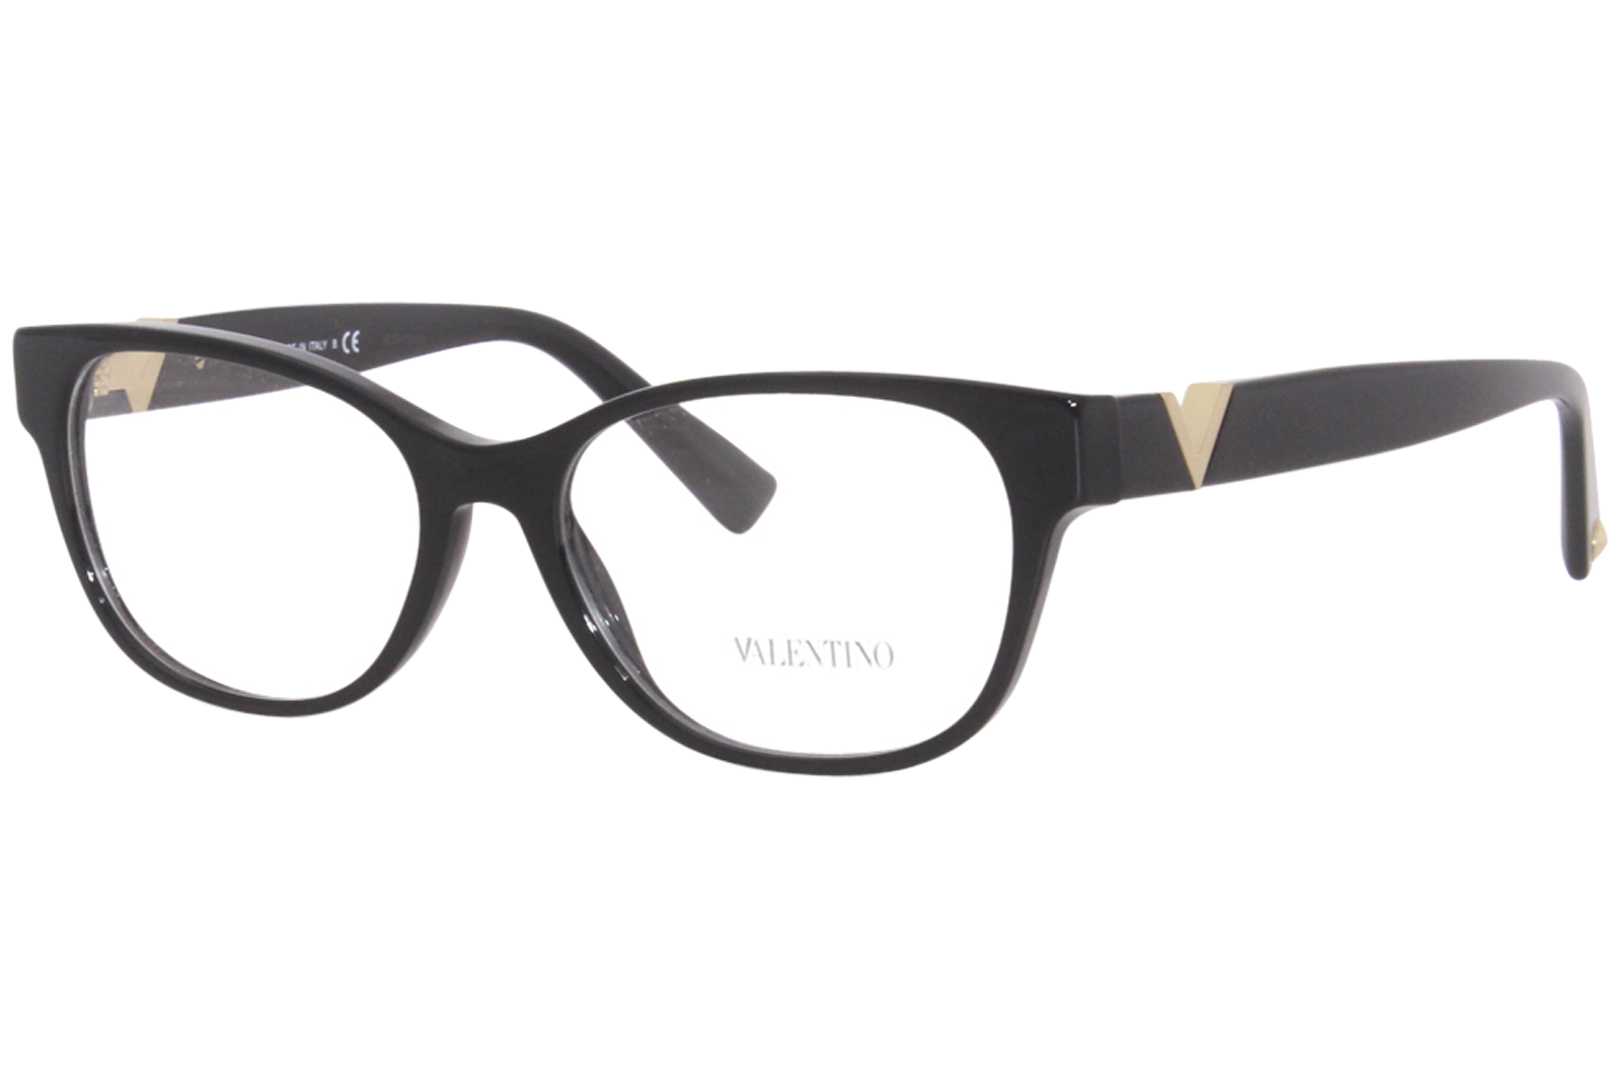 Valentino VA3063 Eyeglasses Women's Full Rim Rectangular Optical Frame ...